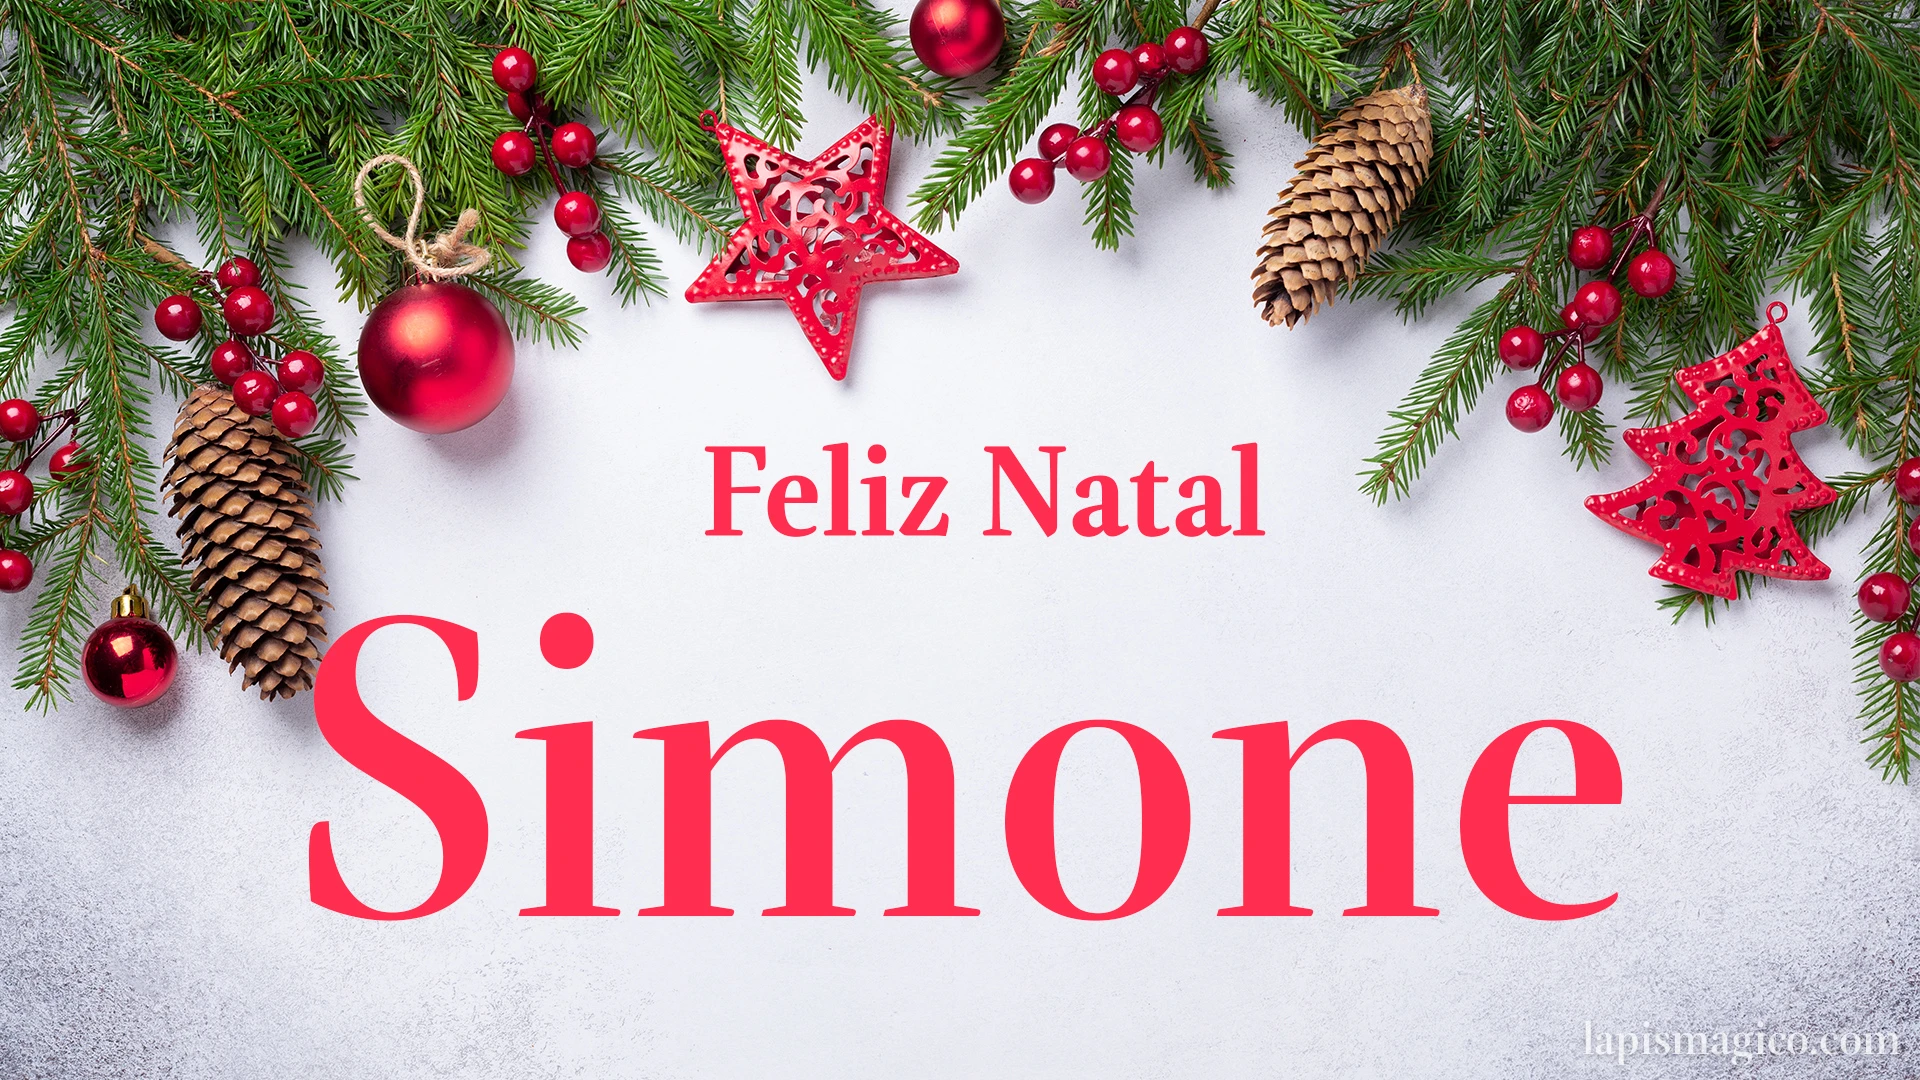 Oh Simone, cinco postais de Feliz Natal Postal com o teu nome